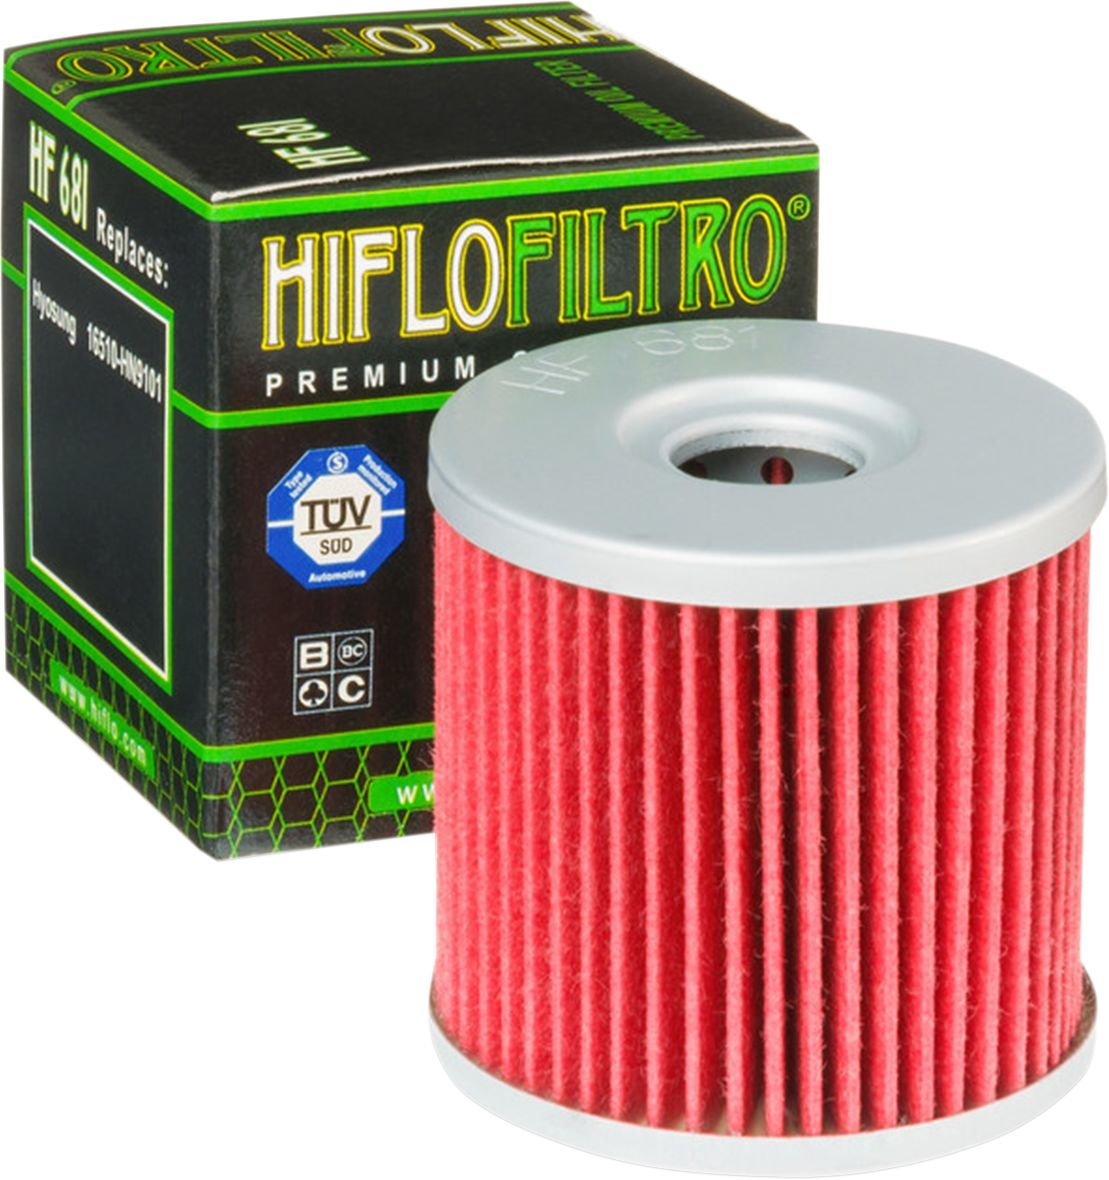 HIFLOFILTRO Filter Oil Hyosung Hf681 von HifloFiltro